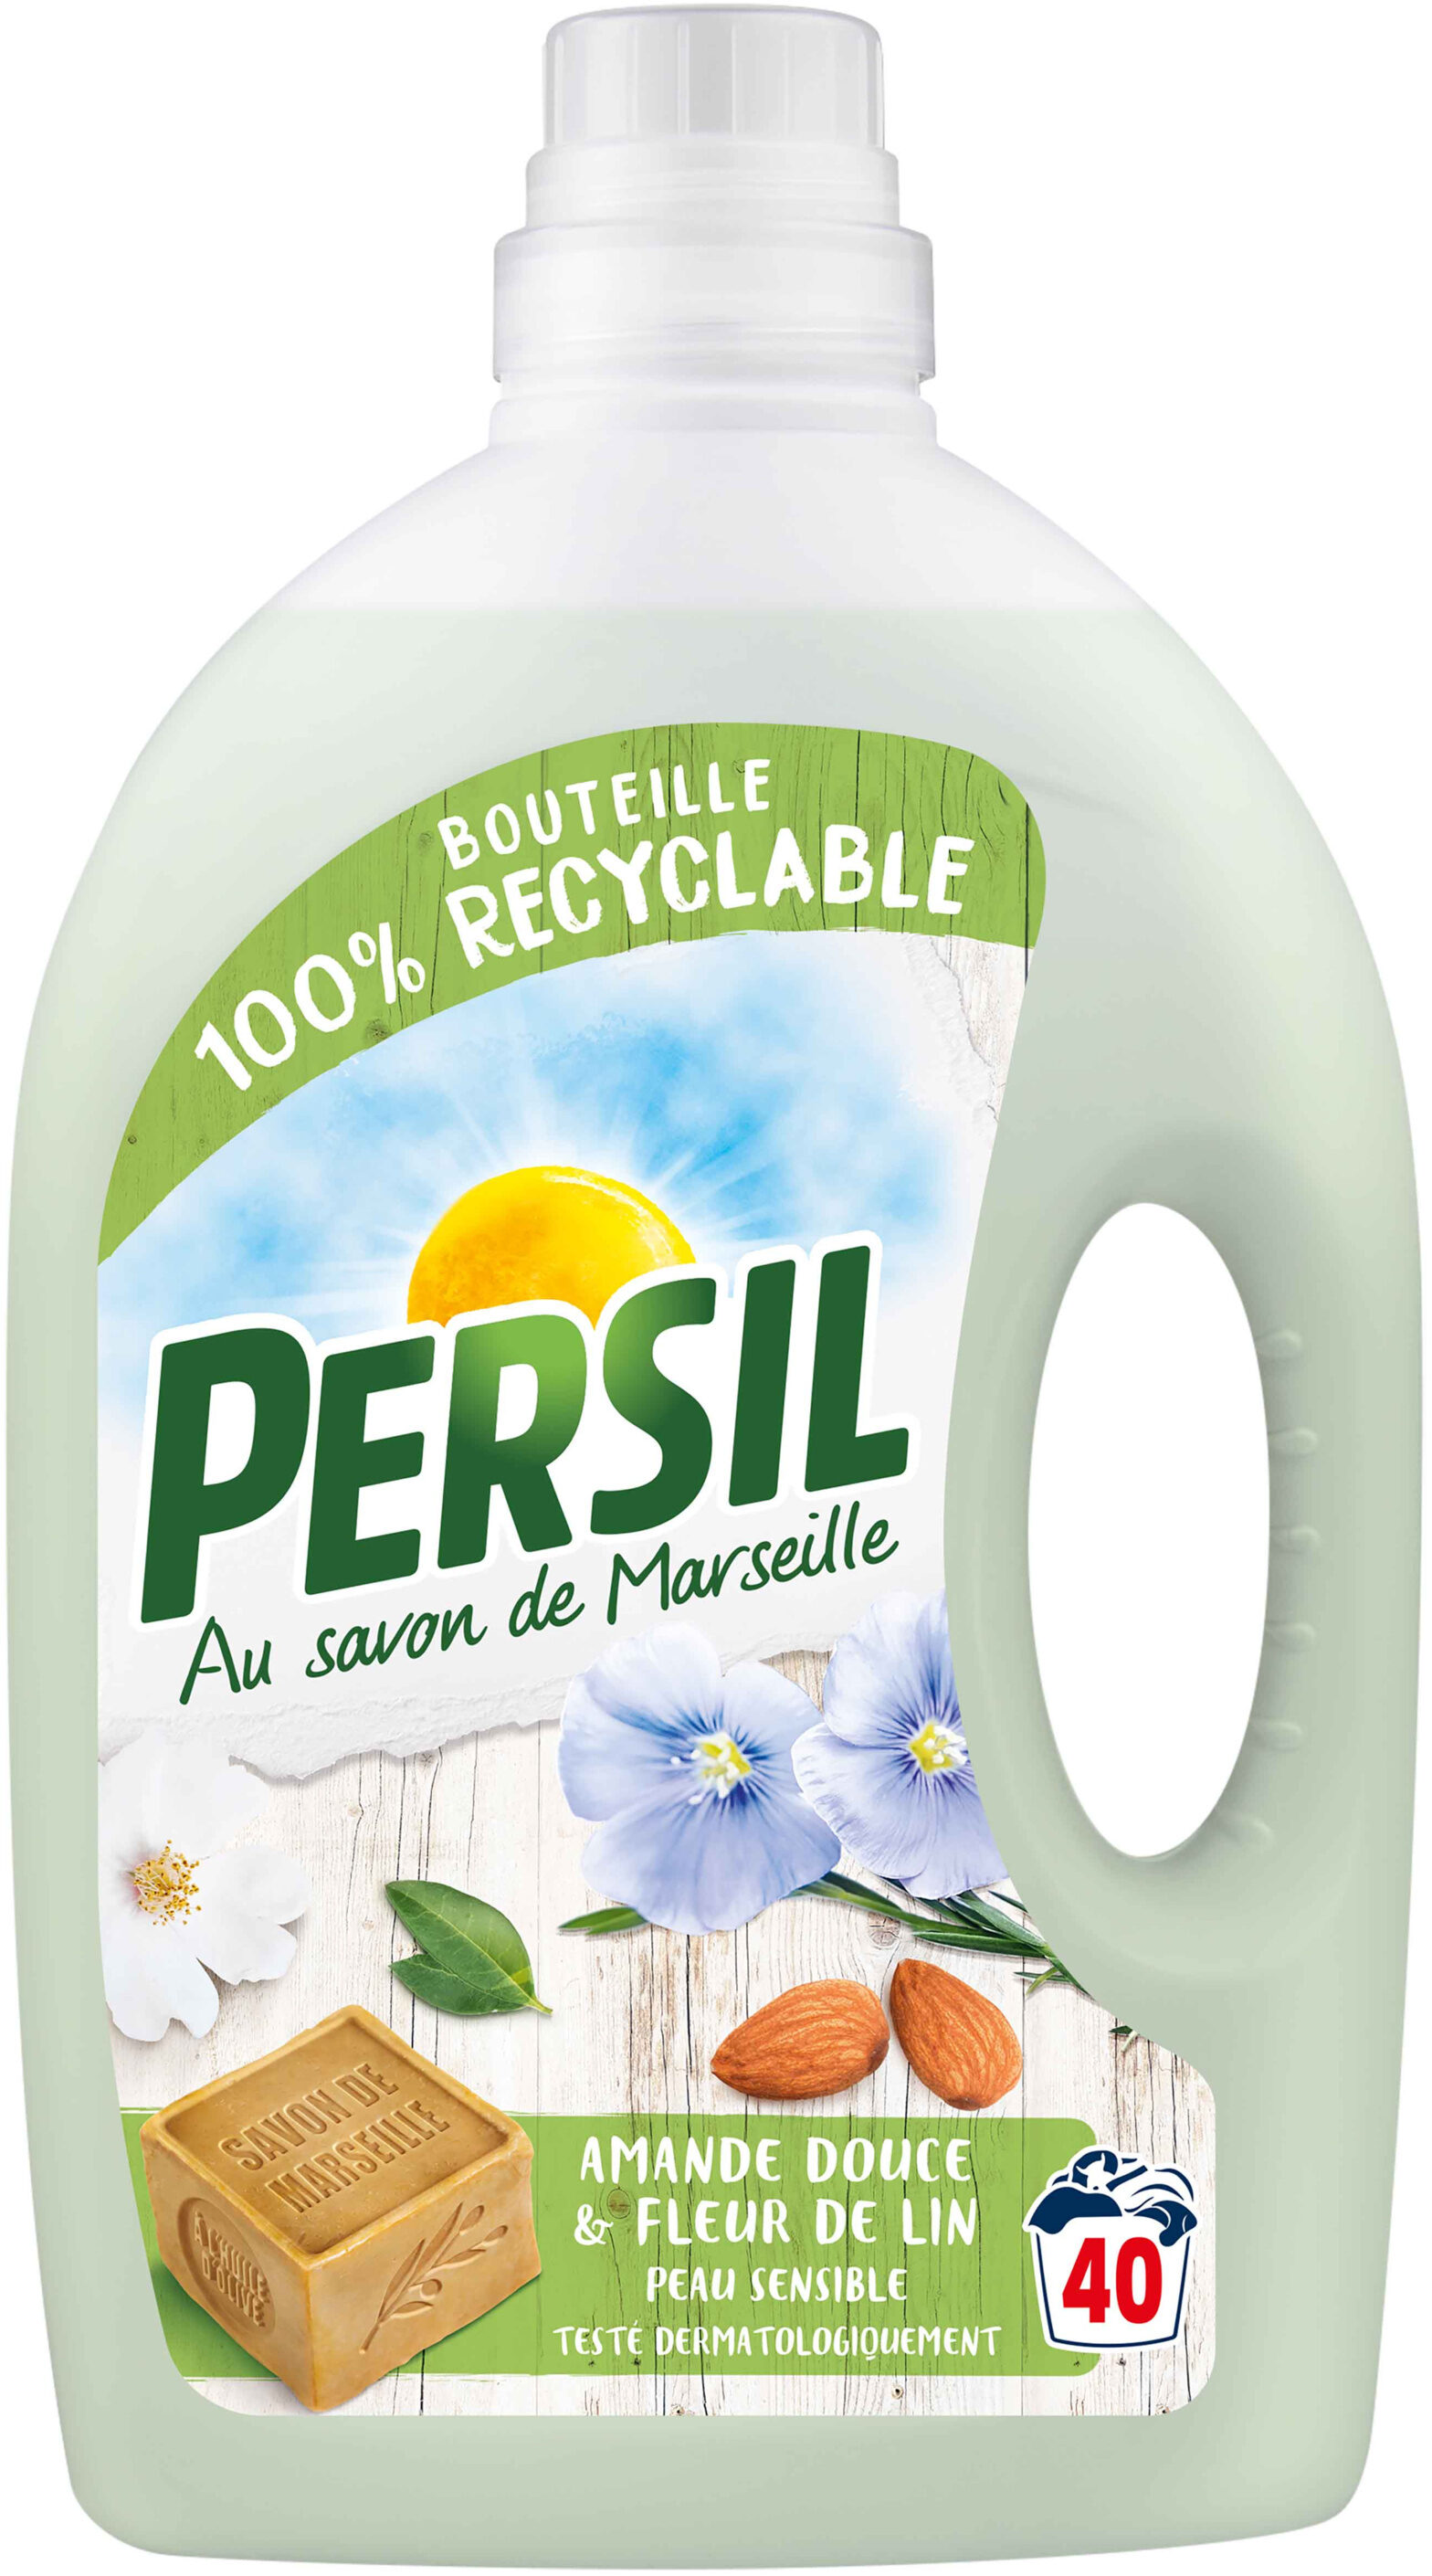 Persil Lessive Liquide Peau Sensible Amande Douce 2l 40 Lavages - Product - fr